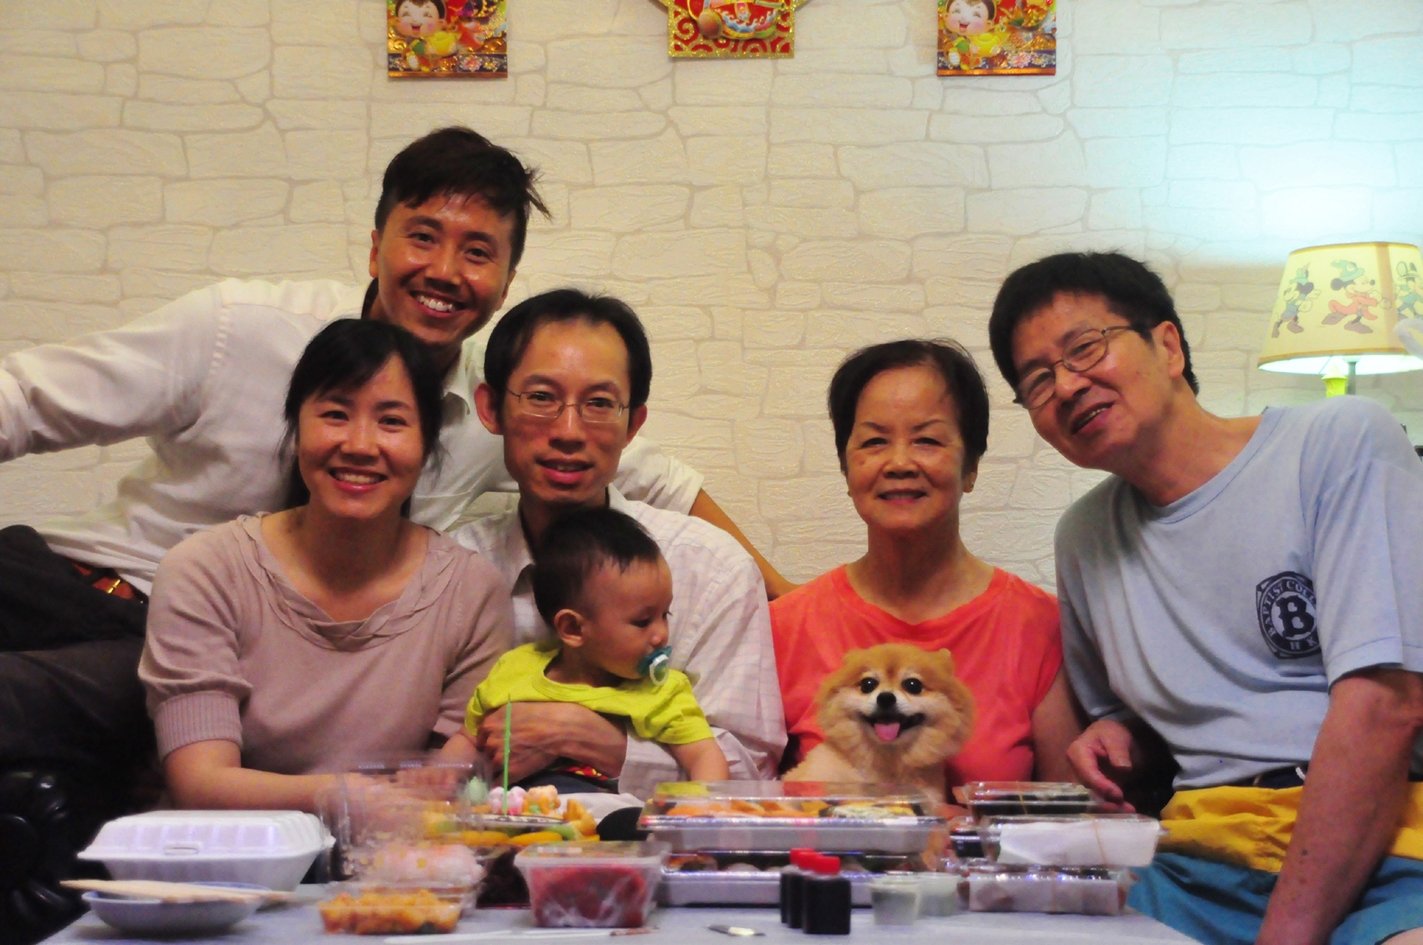 父母年事已高，家人成了叶维昌最大的牵挂。现在的他 几乎把所有的假期用在回香港和家人团聚。他坦言，家人是唯一可能让他从工作岗位退下的理由，但庆幸的是，他们一直都默默支持。